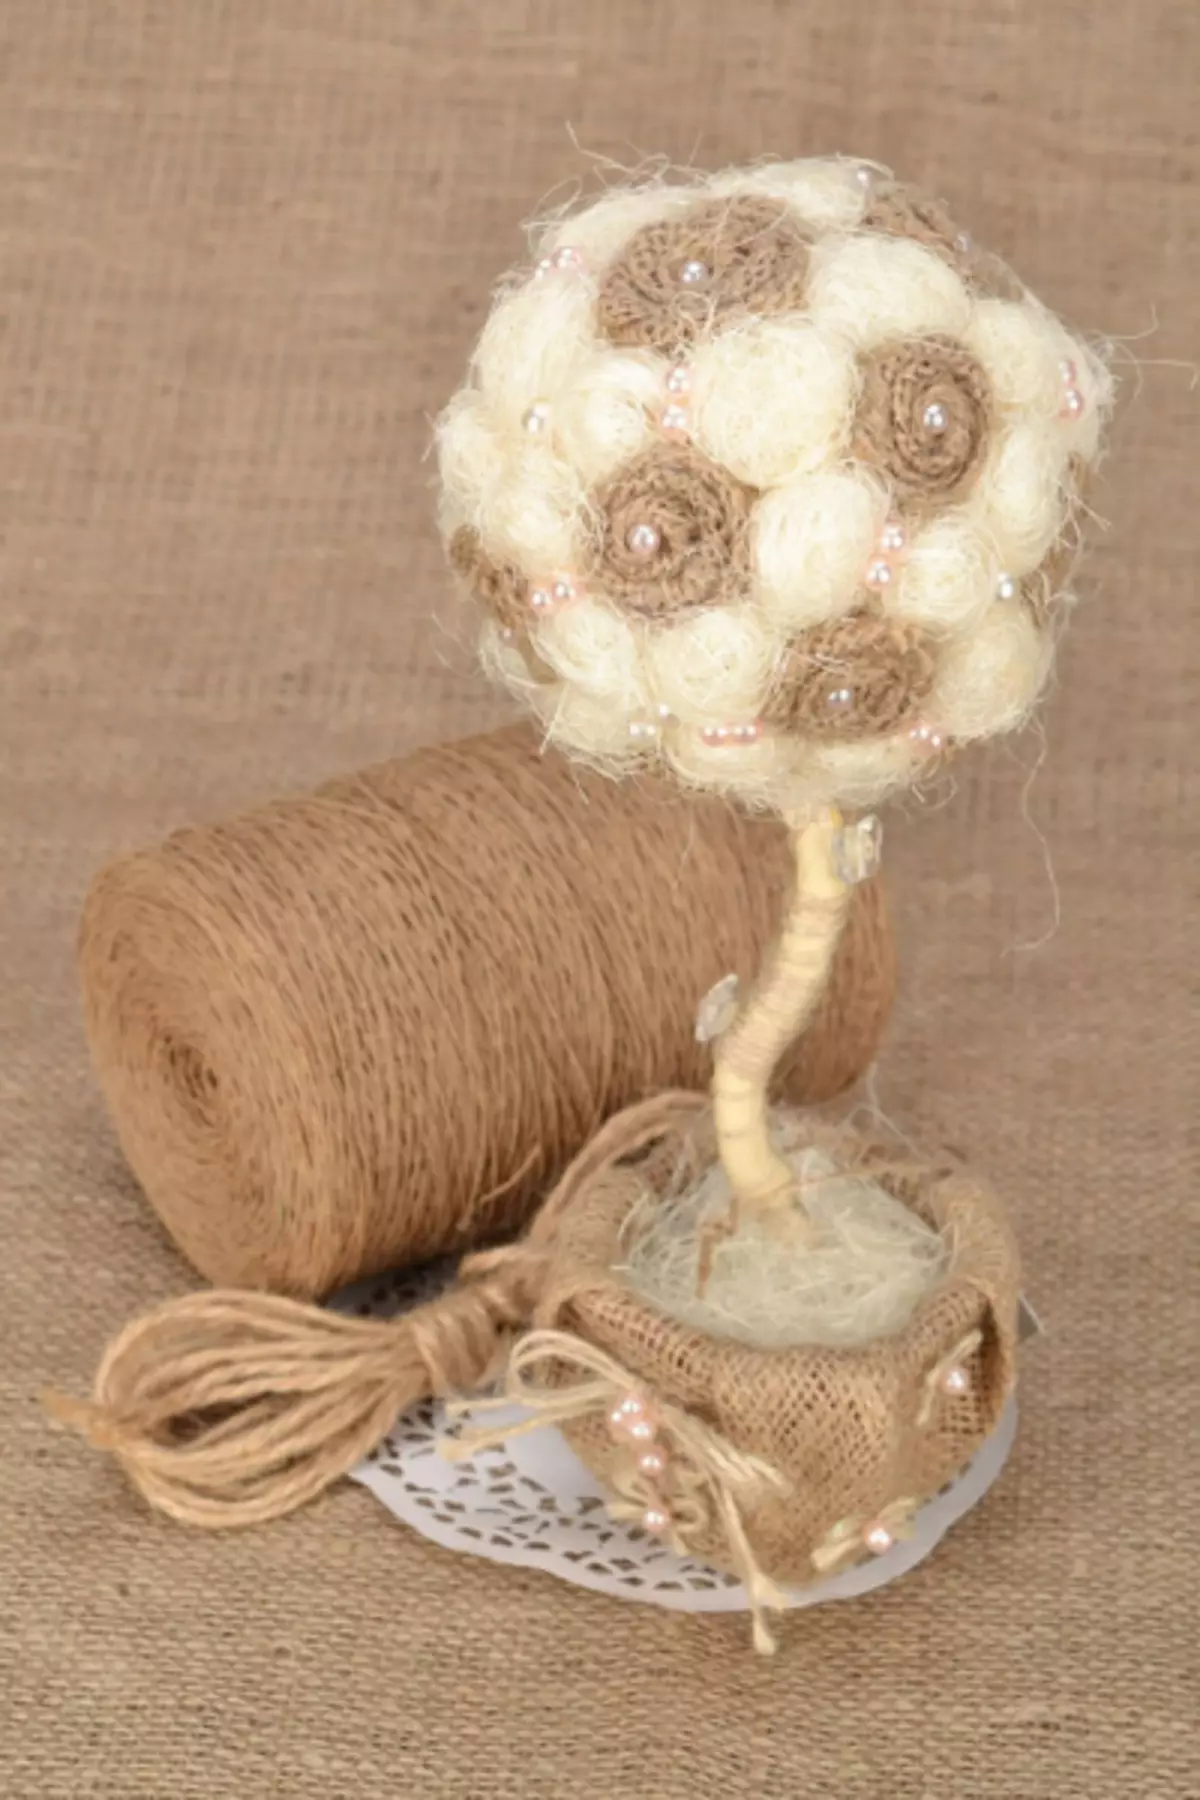 トピアリアのためのボールと装飾のためのボールを作ることができる